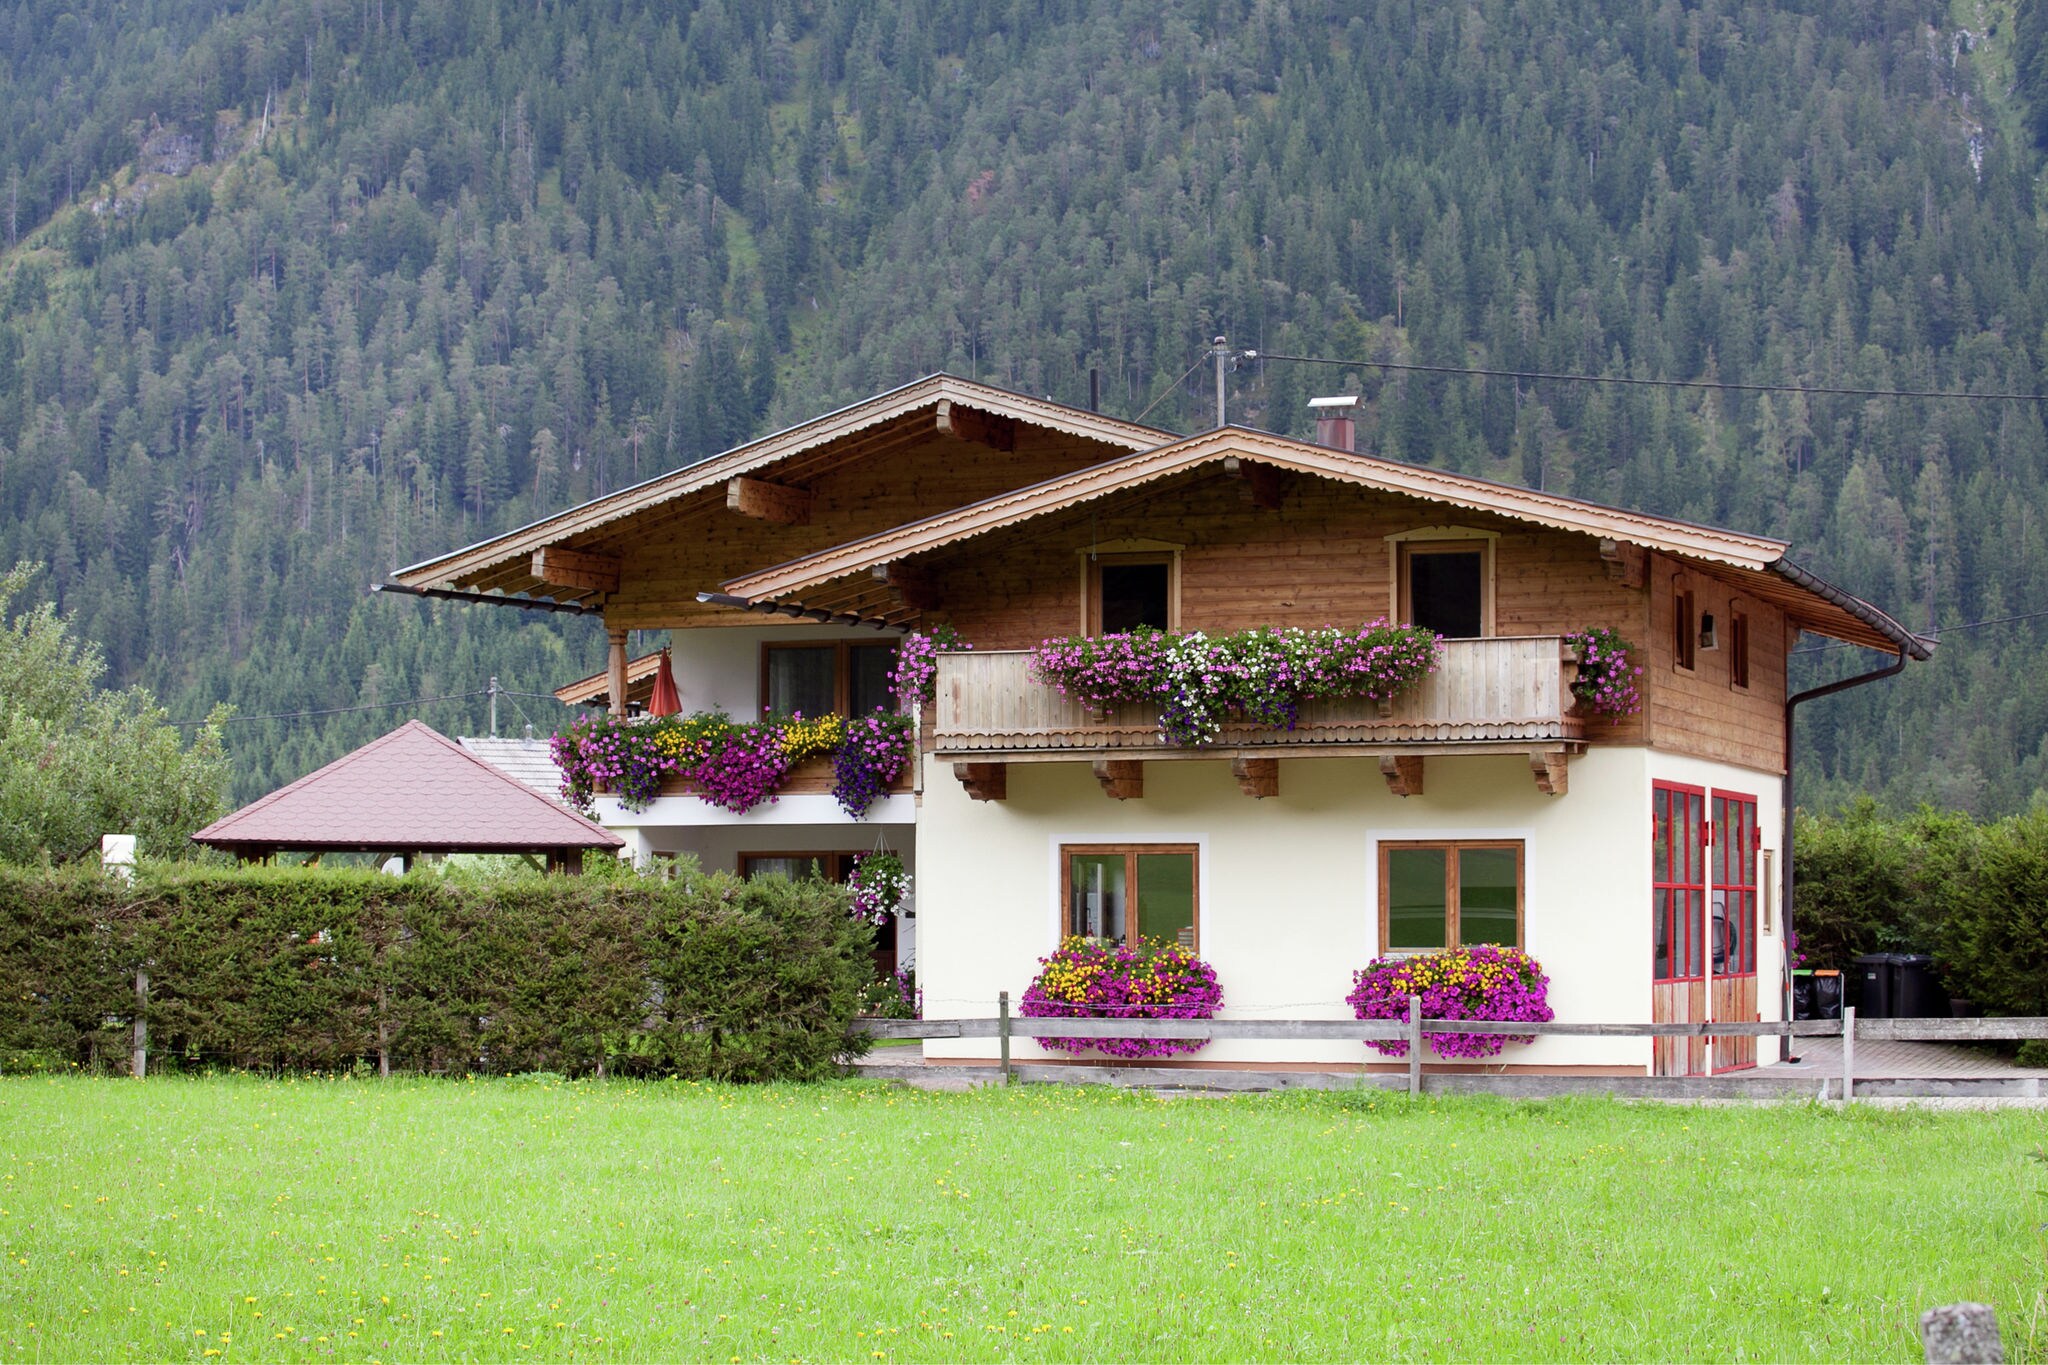 Ferienwohnung mit Pool in Waidring, Tirol